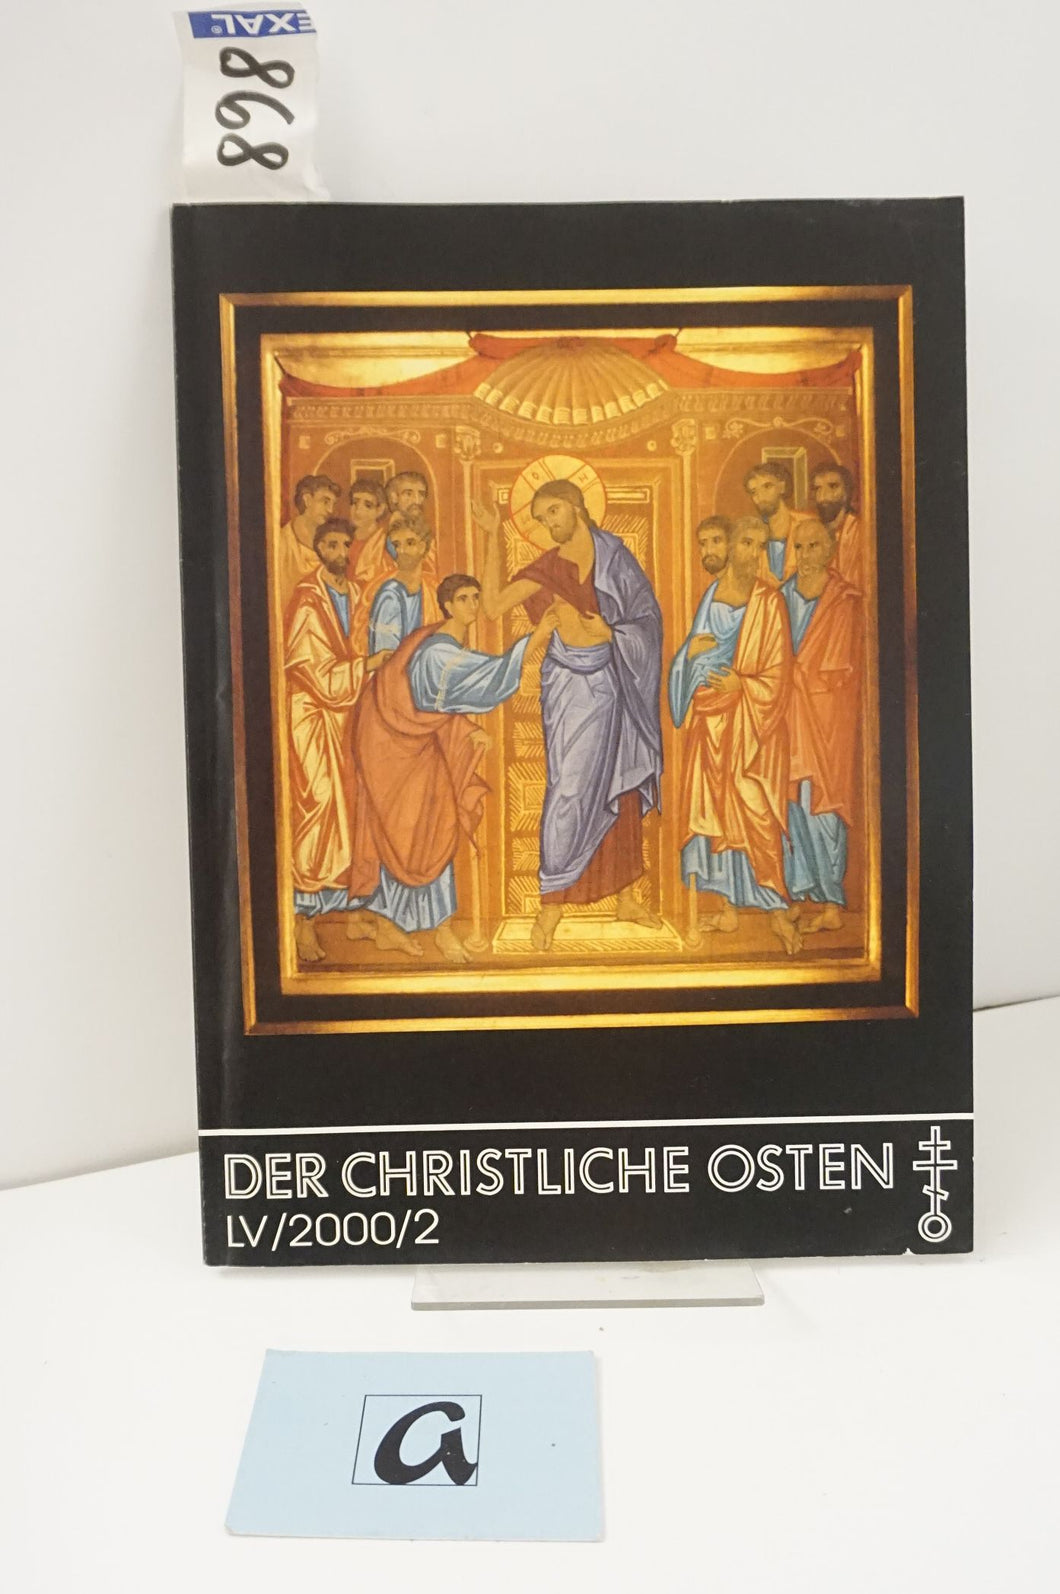 Der Christliche Osten - LV / 2000 / 2